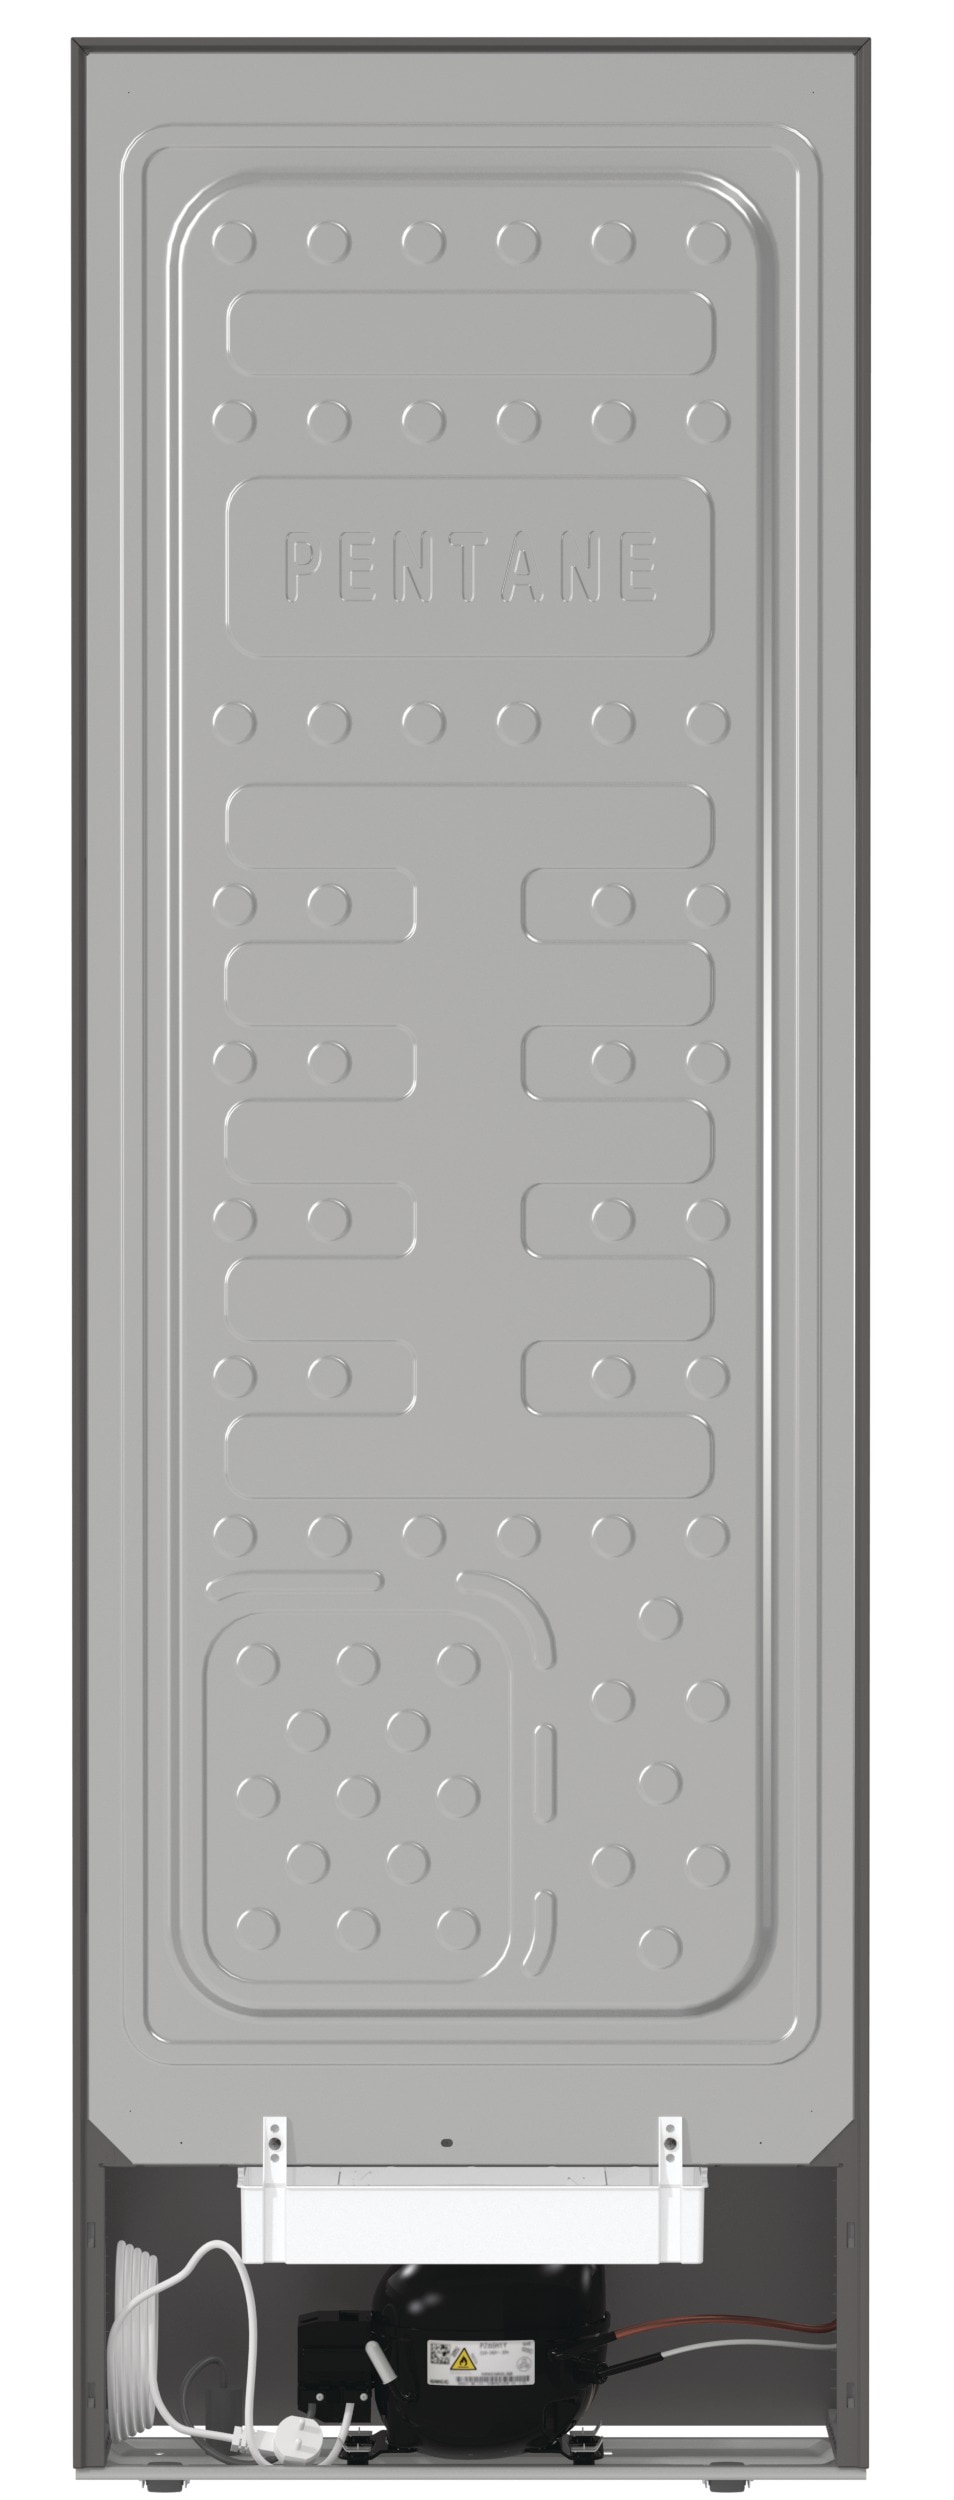 GORENJE Kühlschrank »R 619 EE«, R 619 EES5, 185 cm hoch, 59,5 cm breit, 280 Liter Volumen